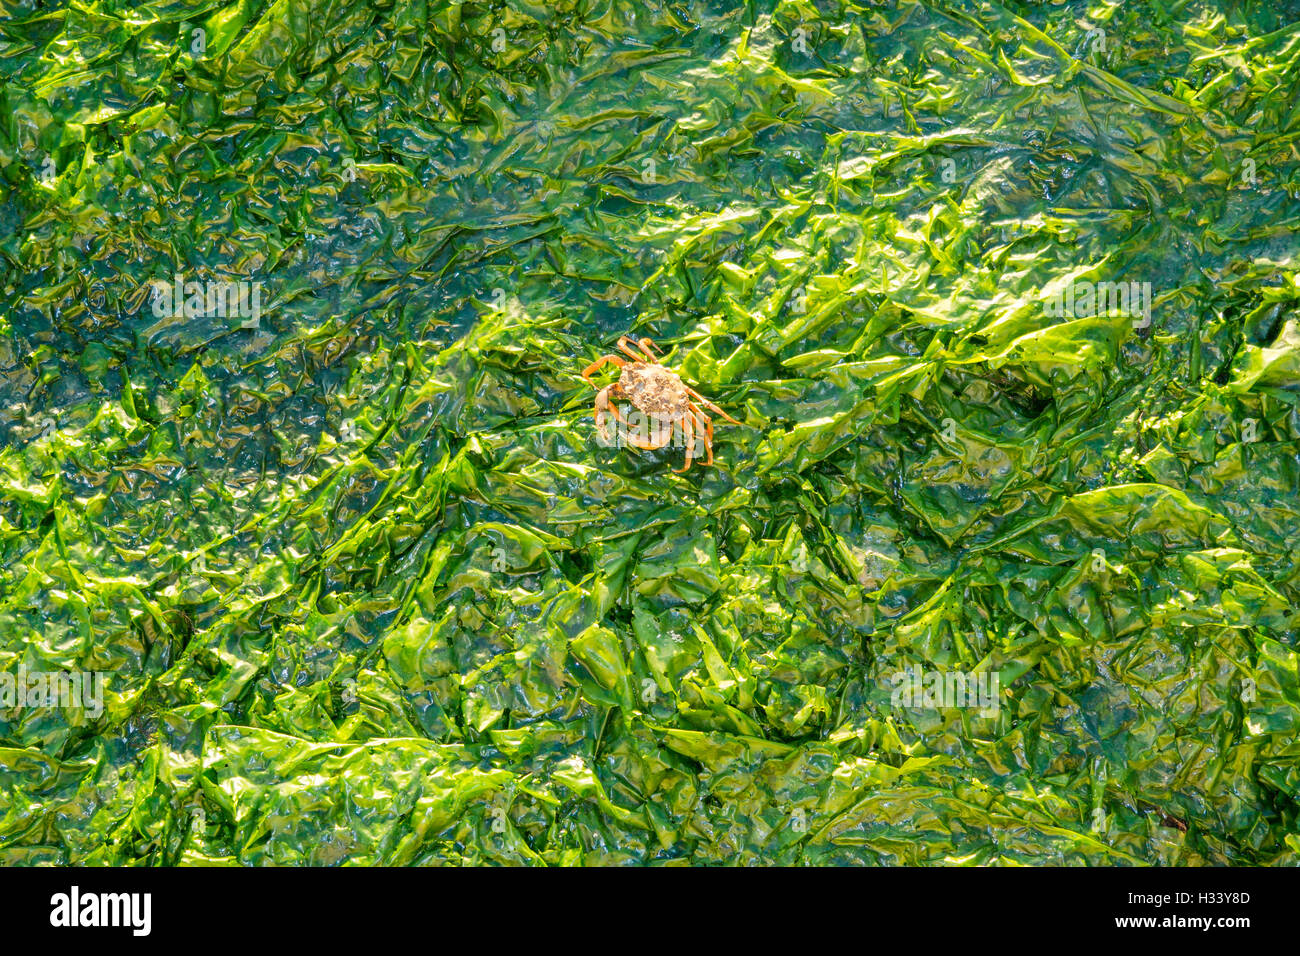 Shore crab Carcinus maenas, camminando sulla lattuga di mare, Ulva lactuca, su saltwater tidal flats a bassa marea di Waddensea, Olanda Foto Stock